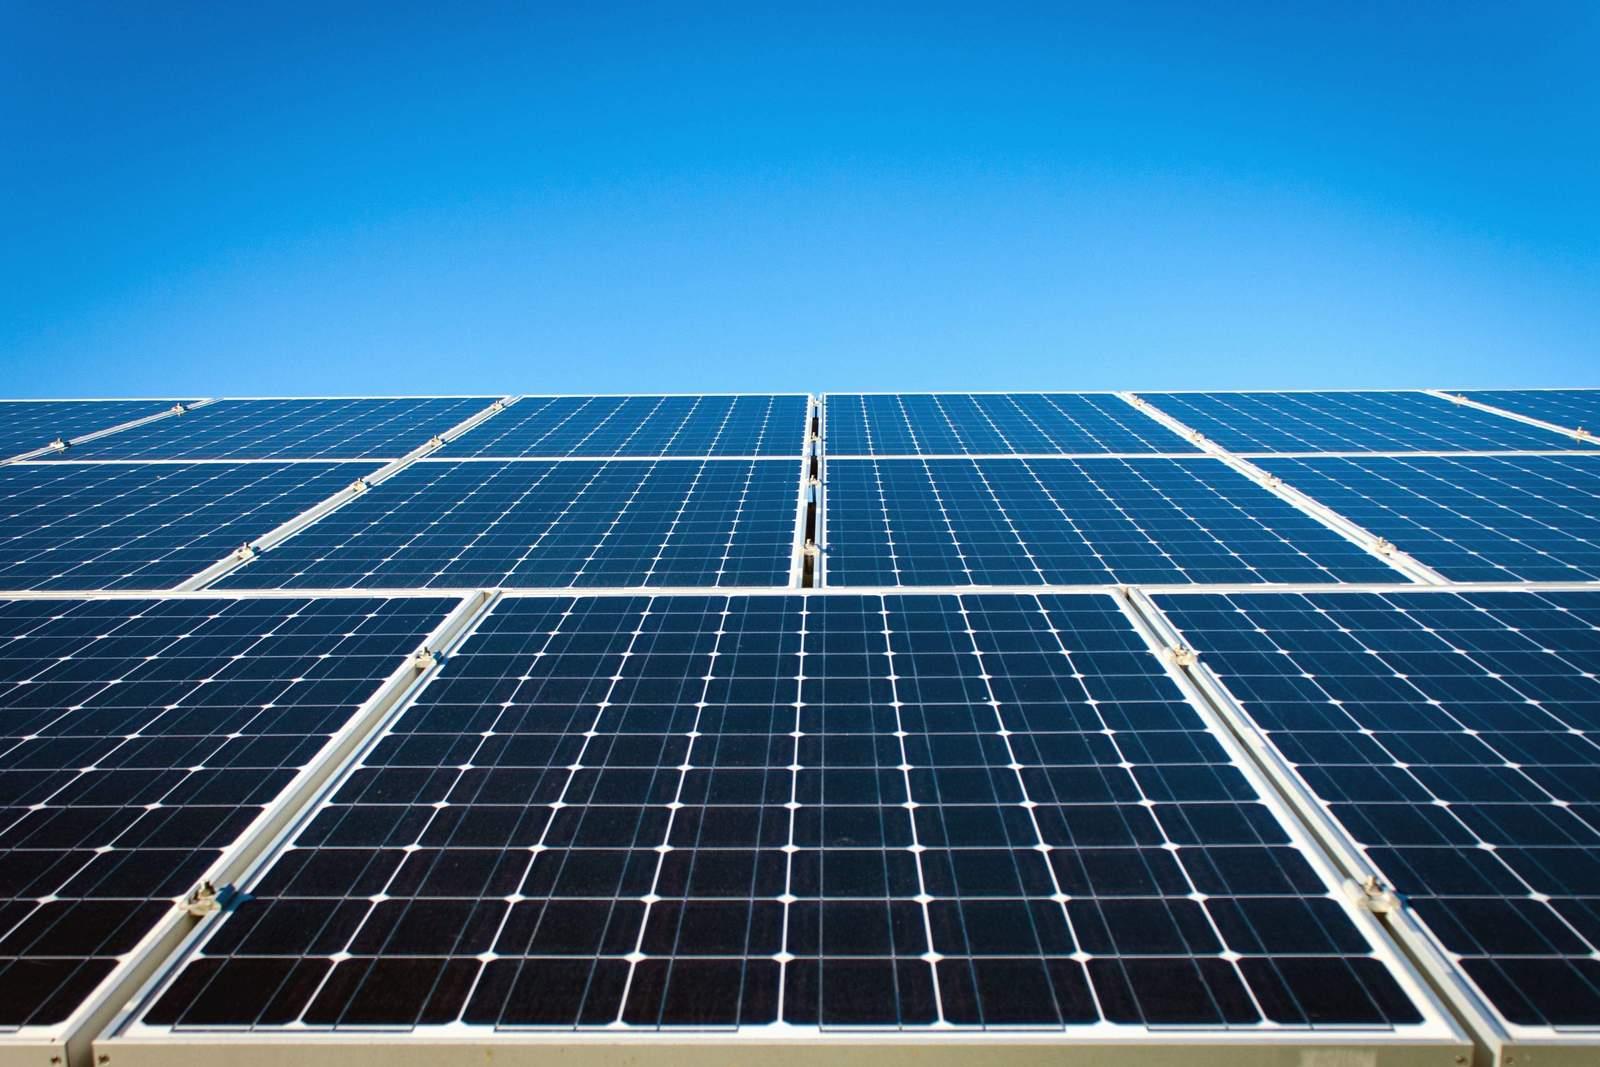 2020年全球新增太阳能装机容量预测下调至105GW